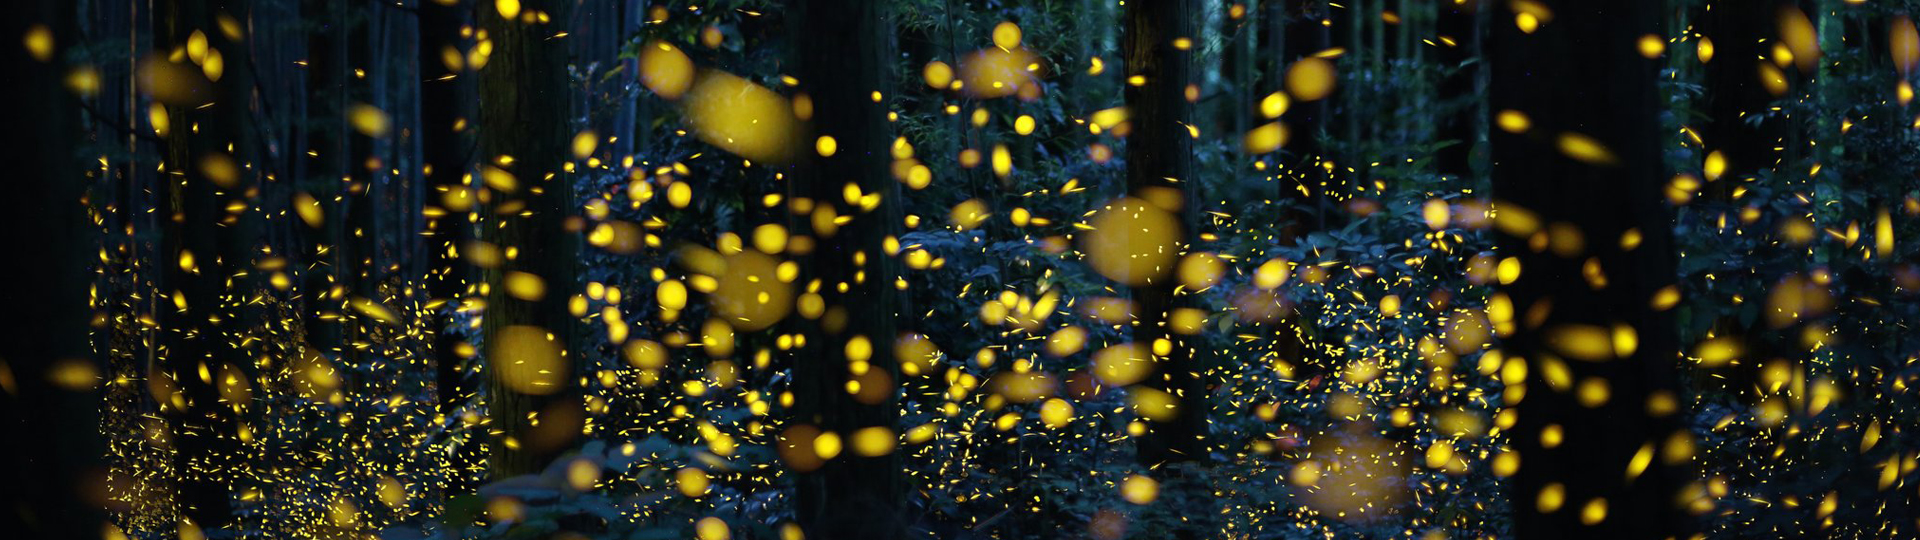 紅樹林夜遊螢火蟲